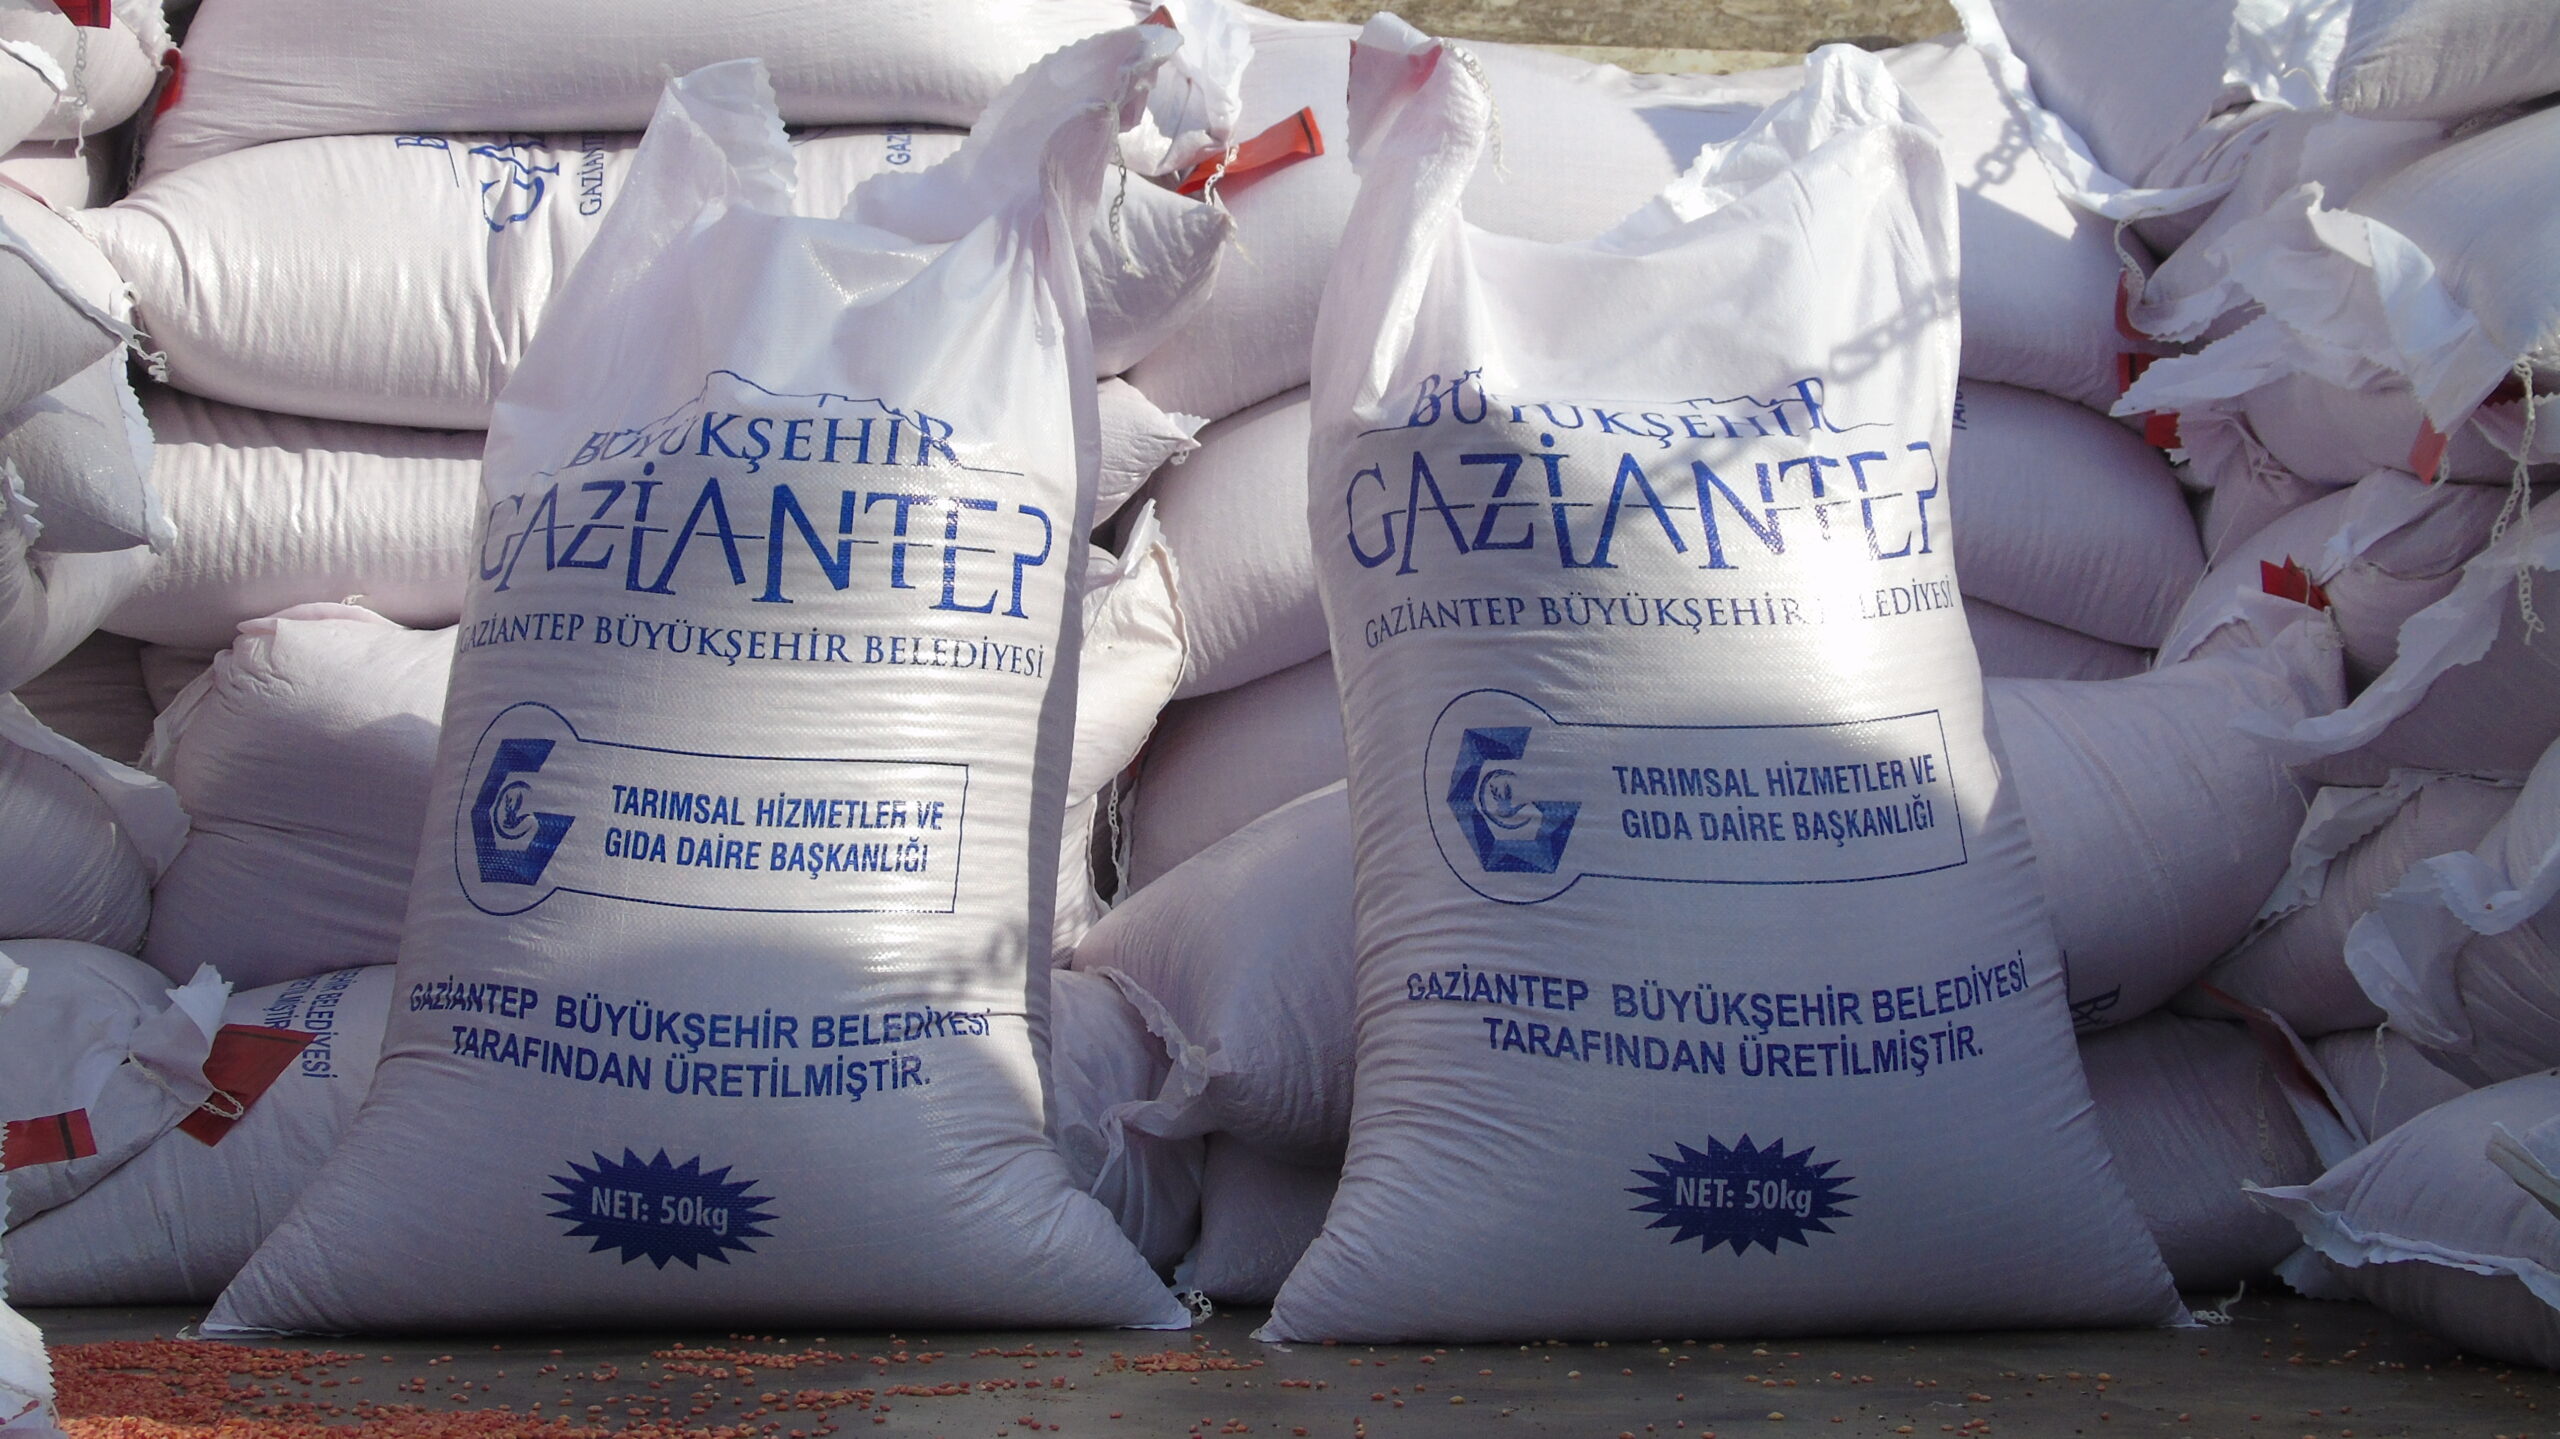 Gaziantep’te afetzede 286 çiftçiye makarnalık buğday tohumu desteği verildi